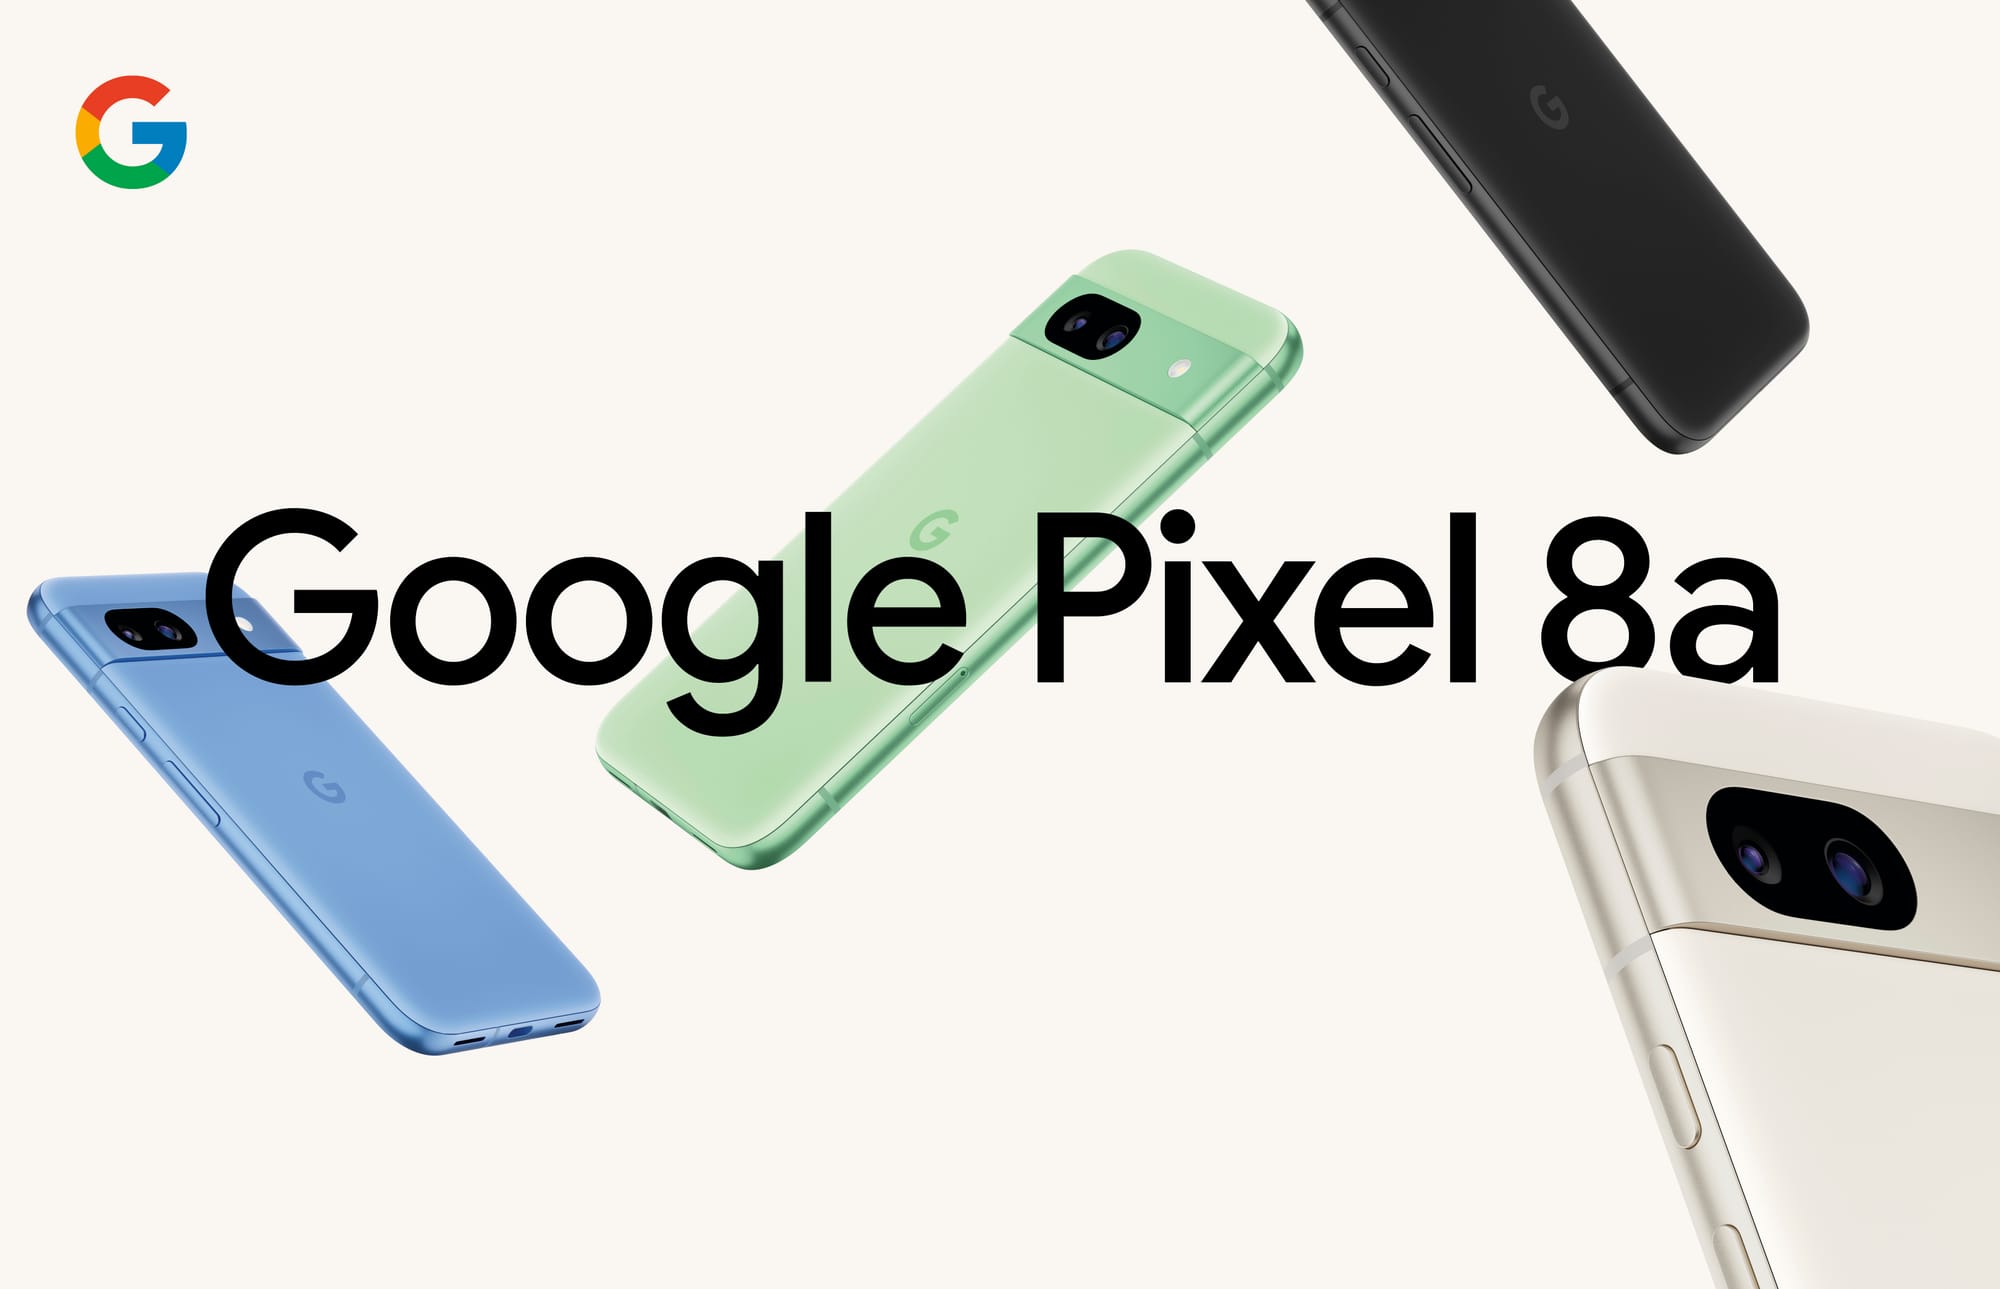 Google Pixel 8a é oficial! A gama média cada vez mais alta